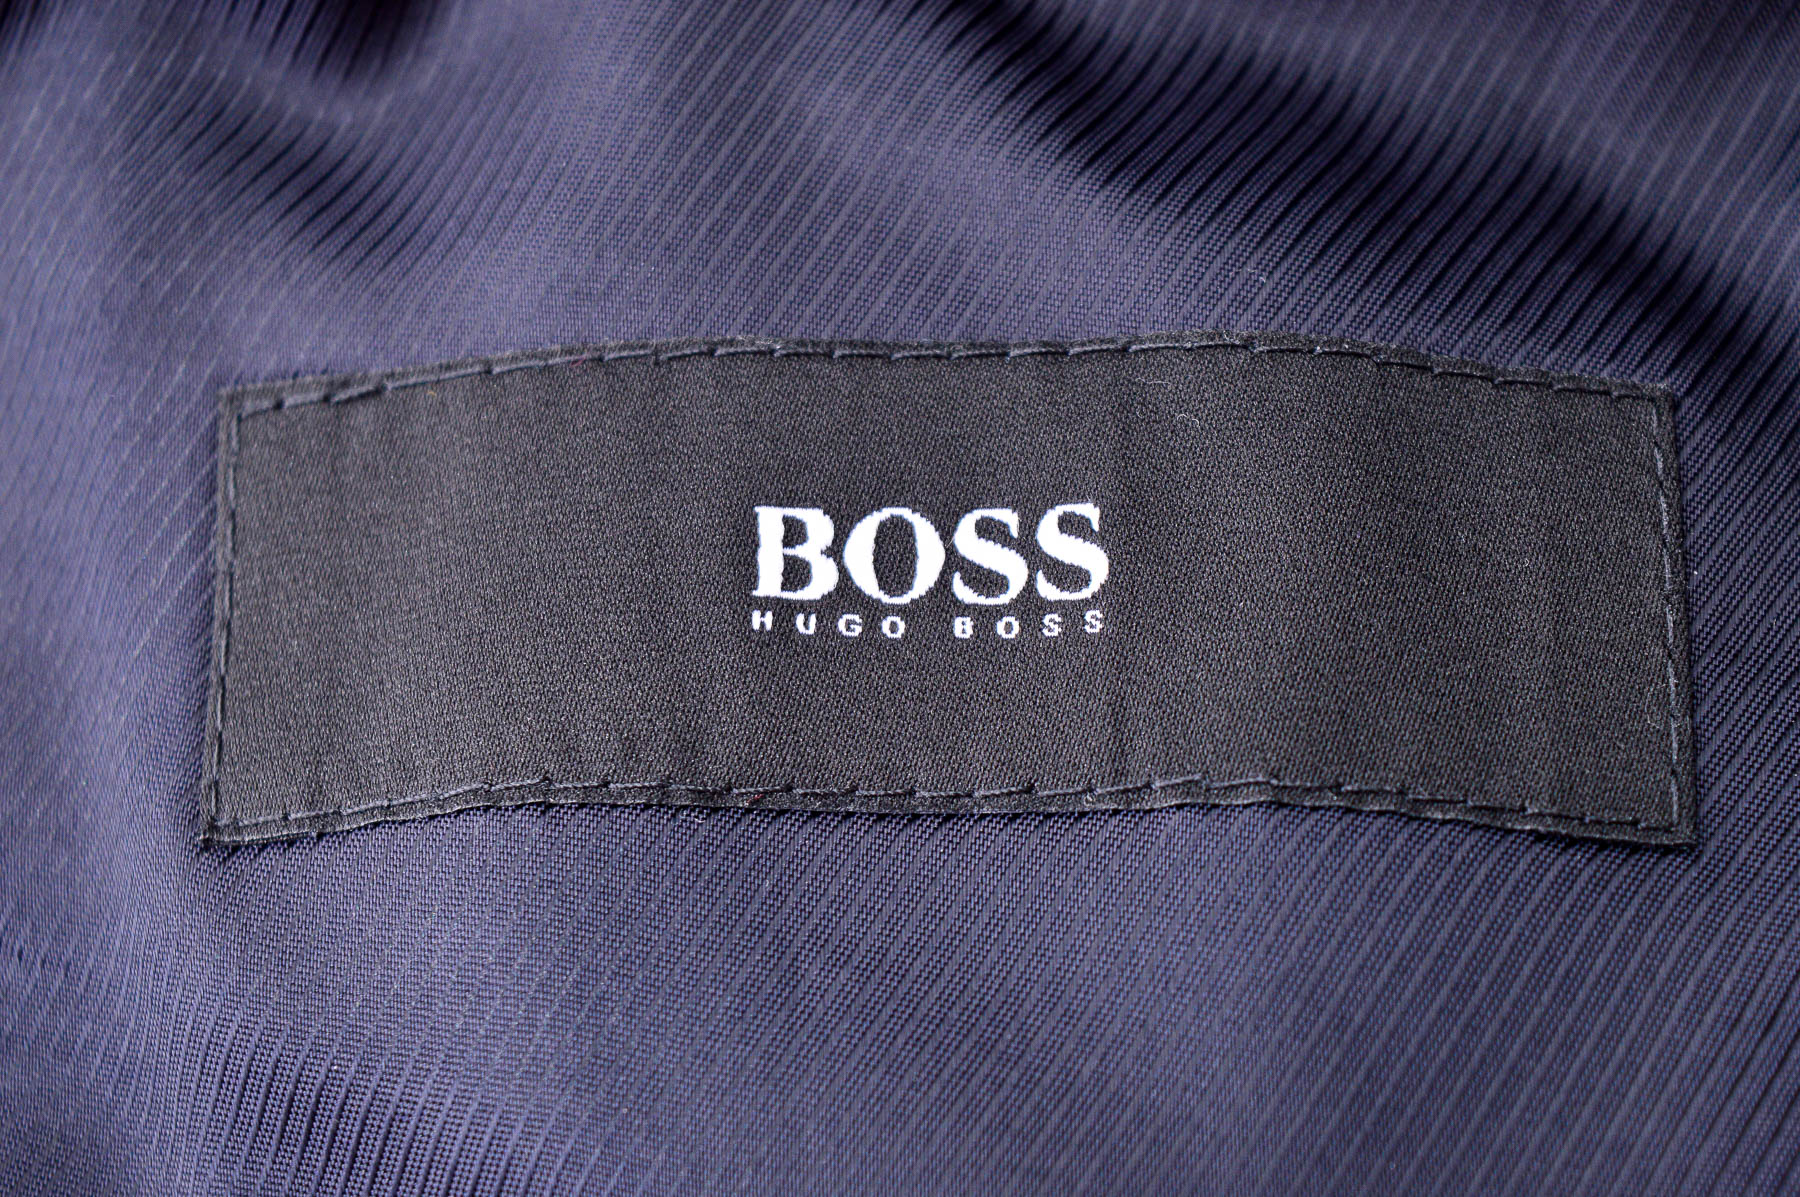 Men's blazer - HUGO BOSS - 2